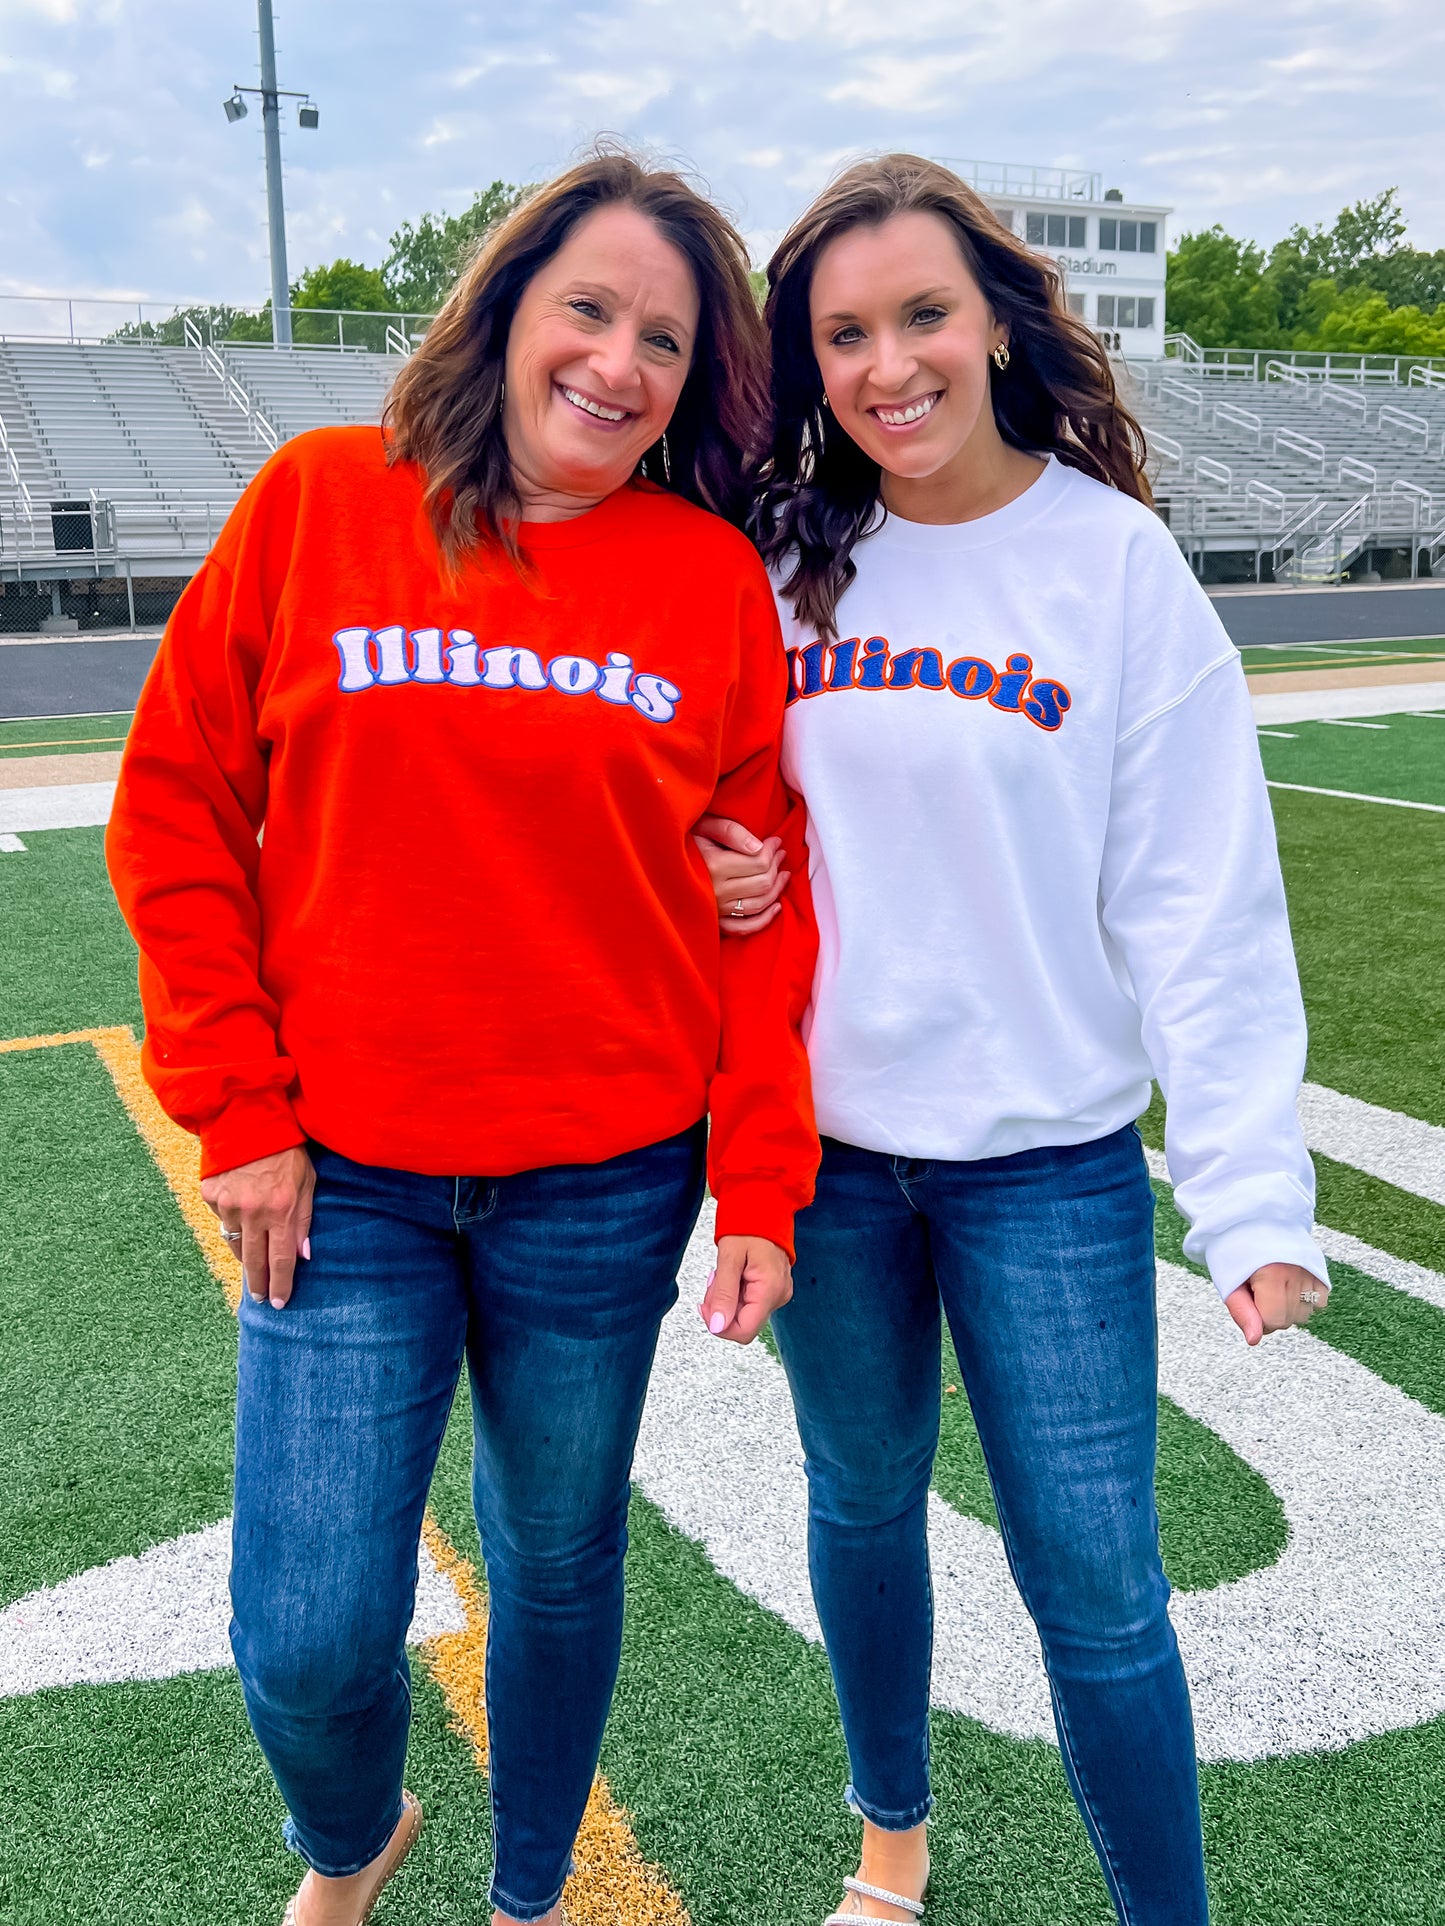 The Illinois Sweatshirt